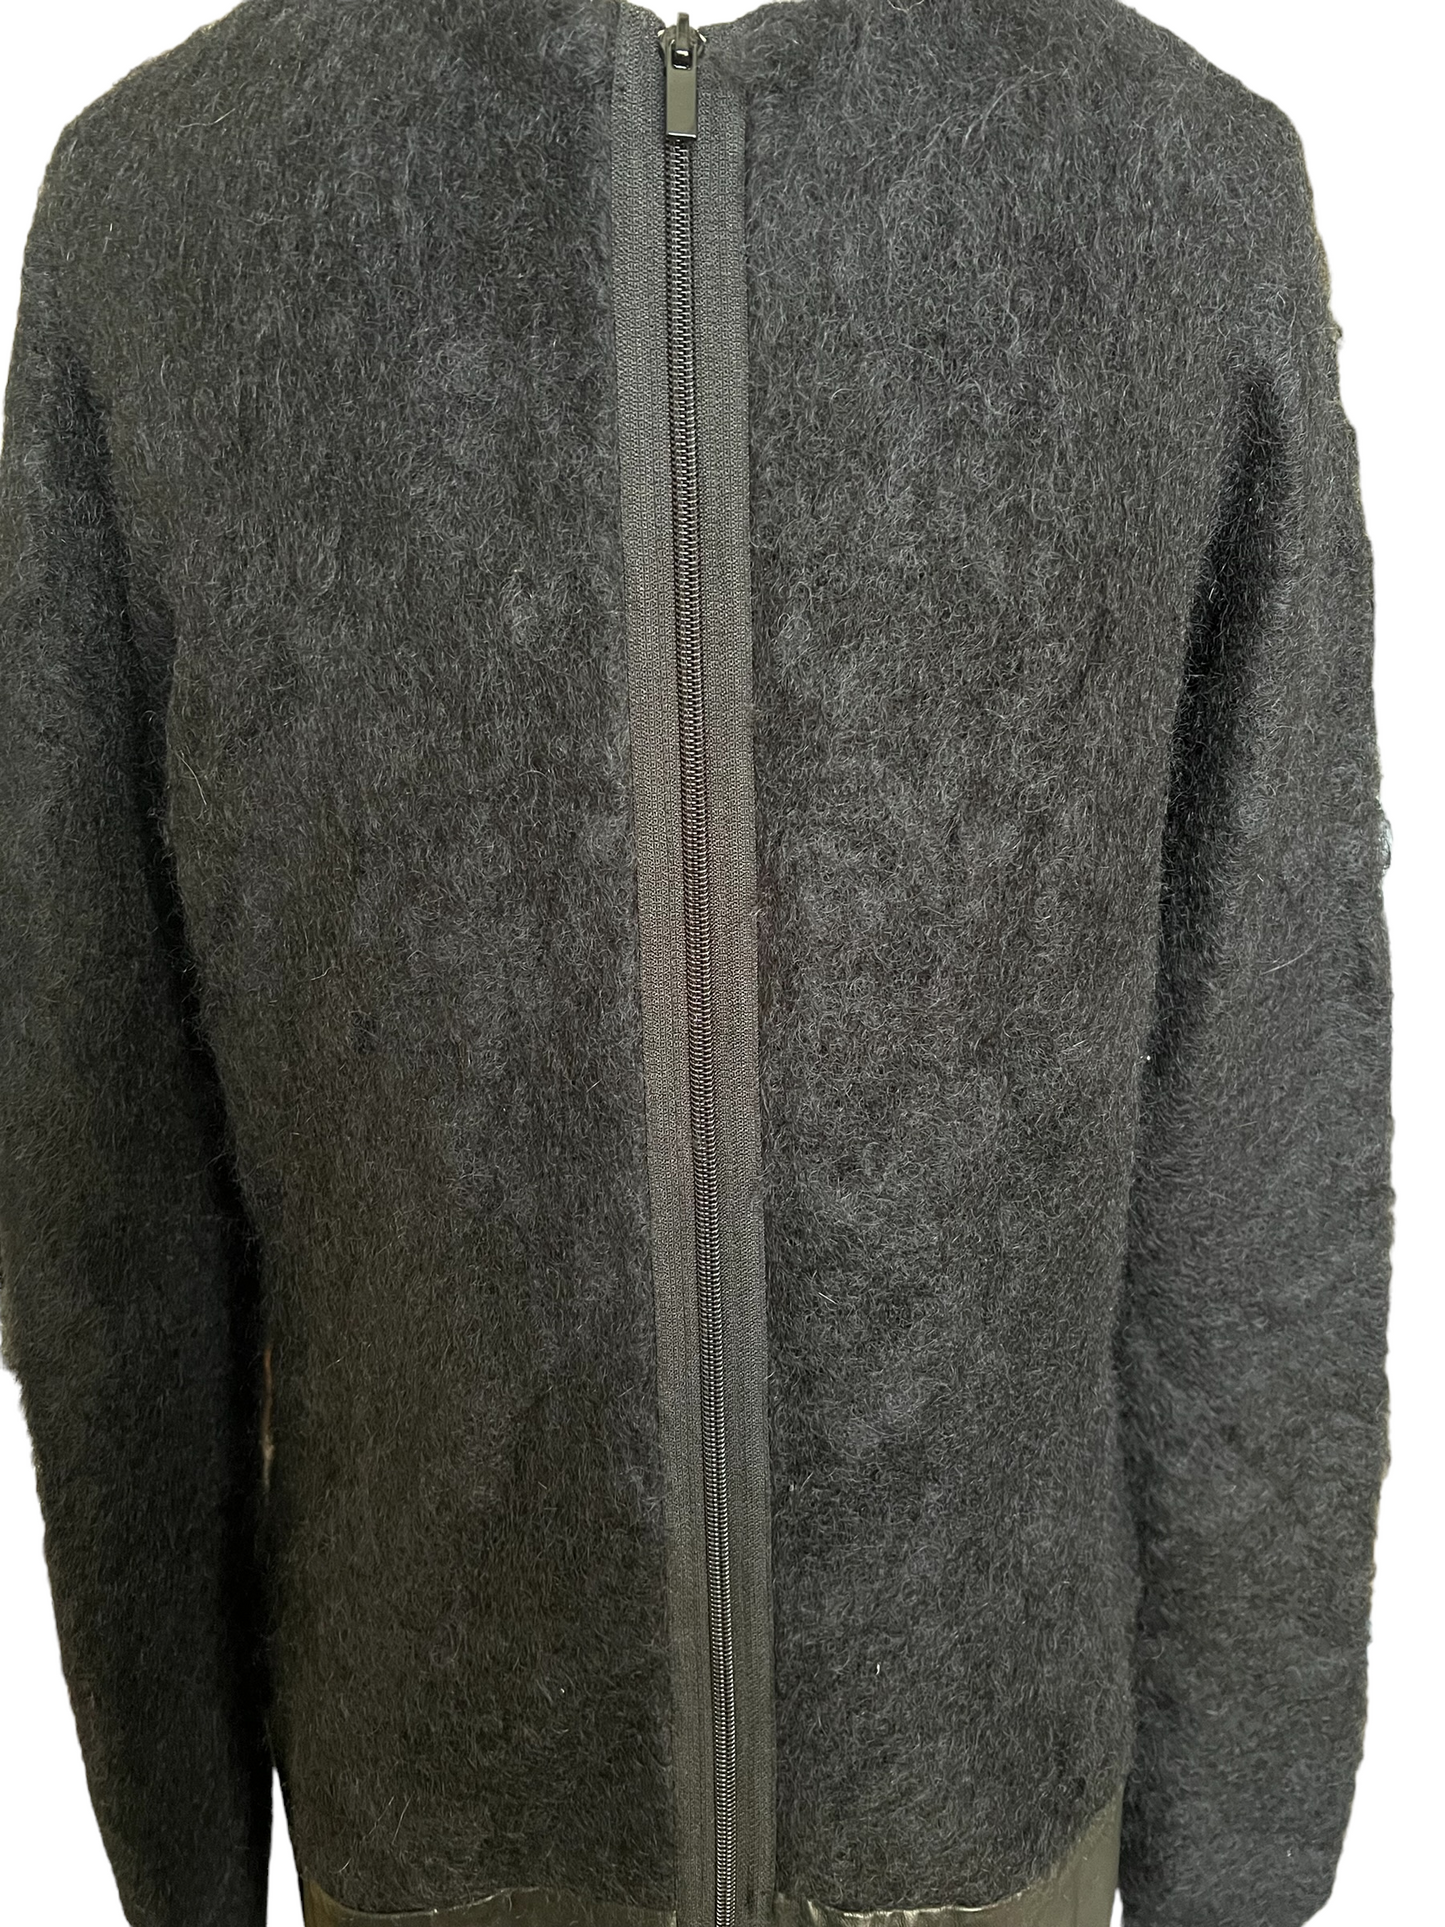 Diane Von Furstenberg DVF Black Wool Leather Size L Dress